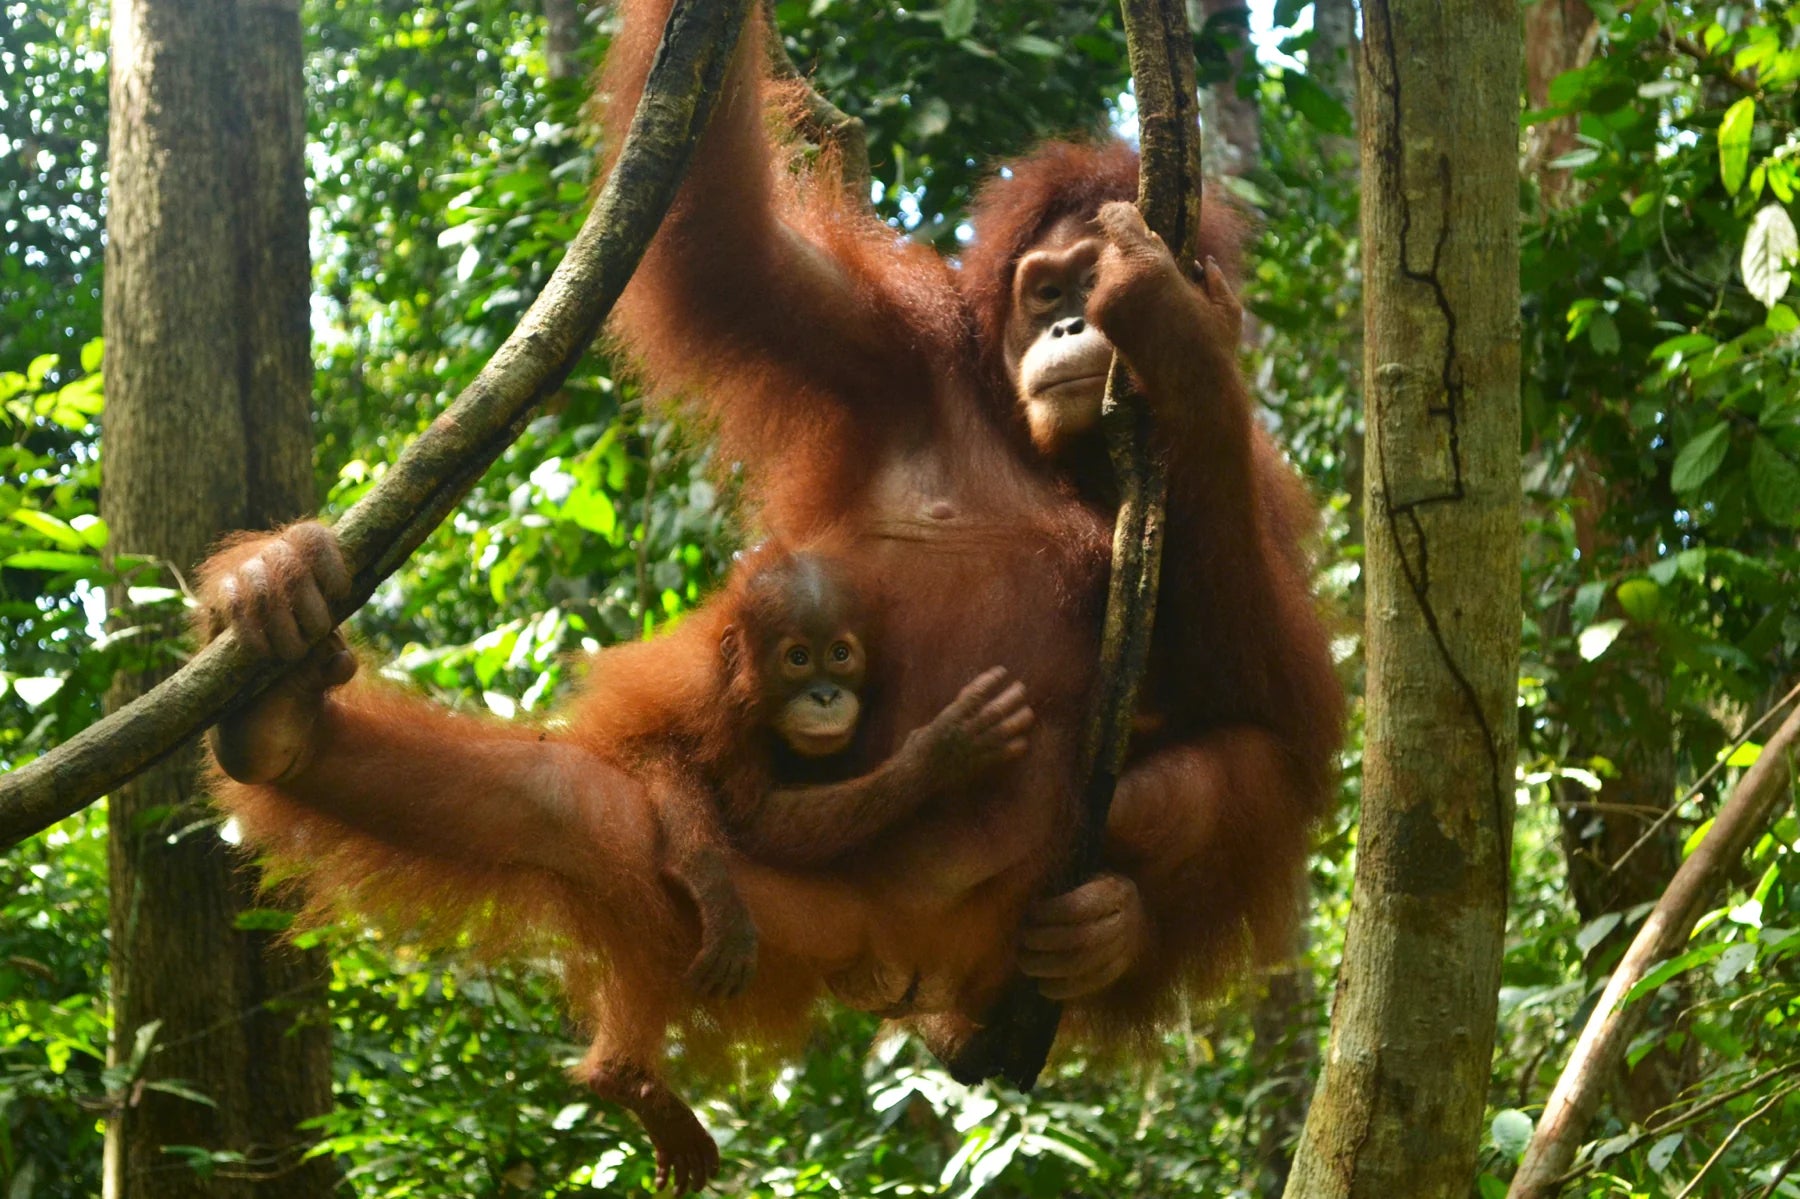 Sam and Sula mom and baby orangutan